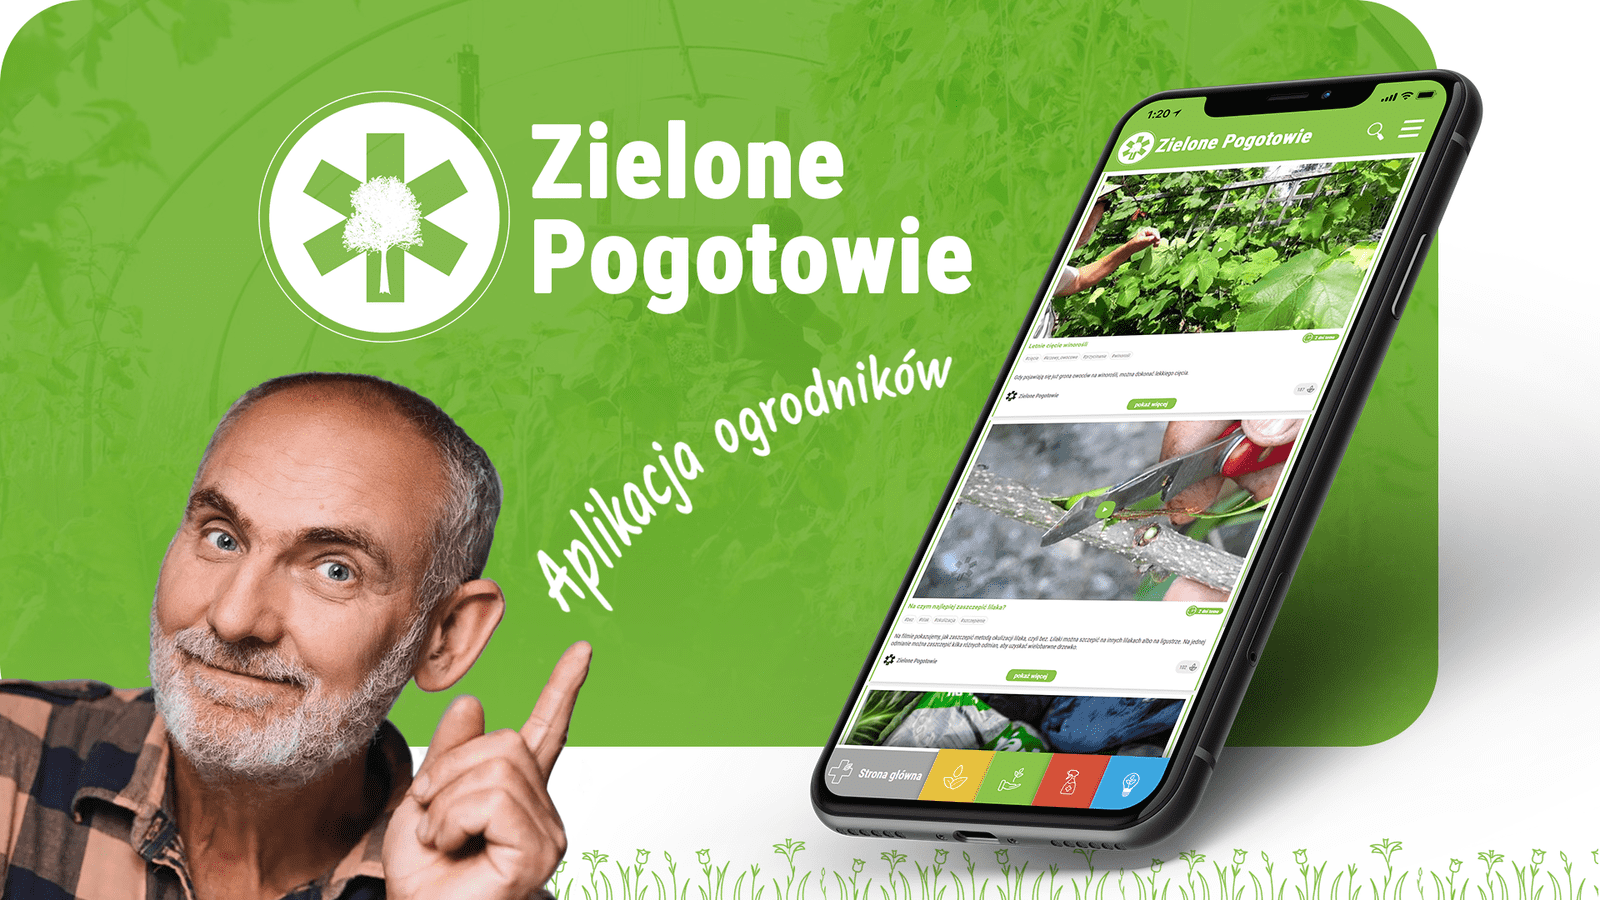 Pan Grzegoż z Zielonego Pogotowia reklamuje aplikację przygotowaną przez firmę Aplinet